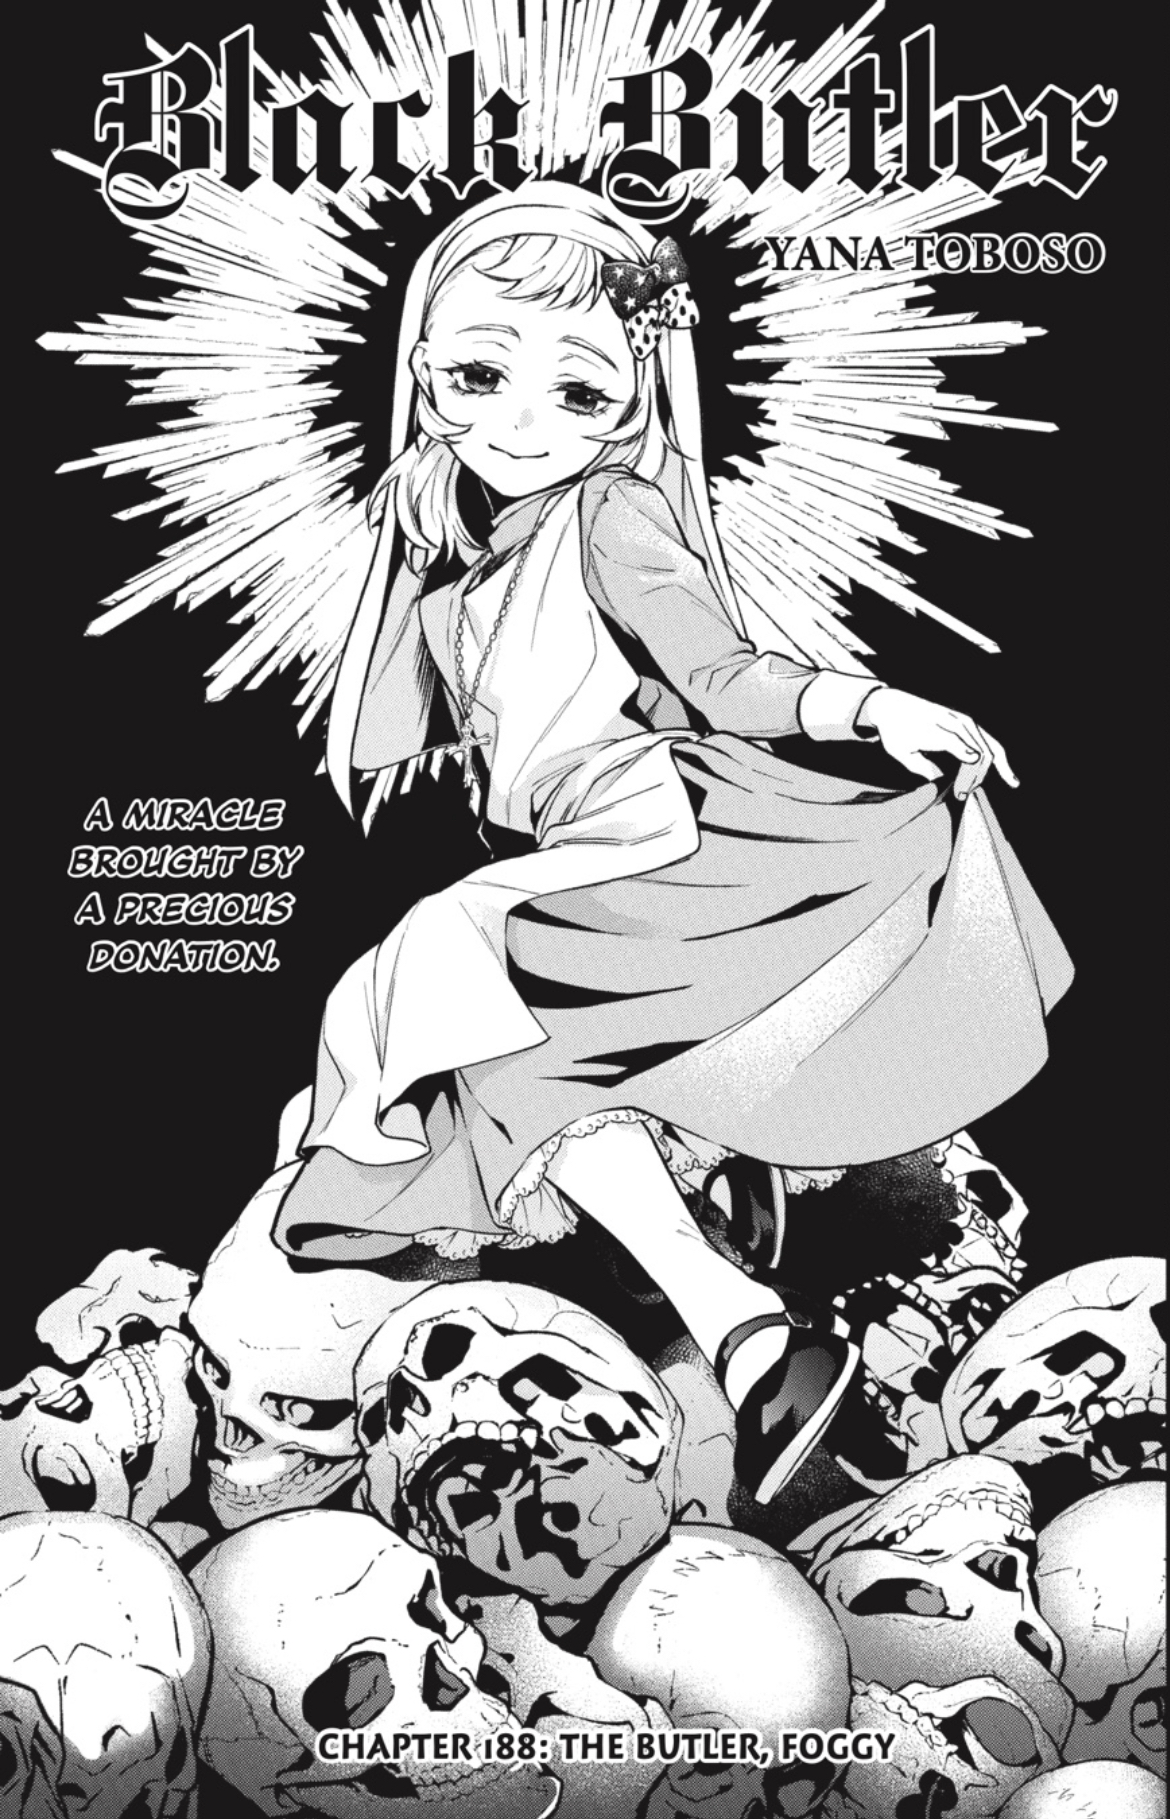 Everything Black Butler — heeyyoungbloods: Kuroshitsuji: manga vs